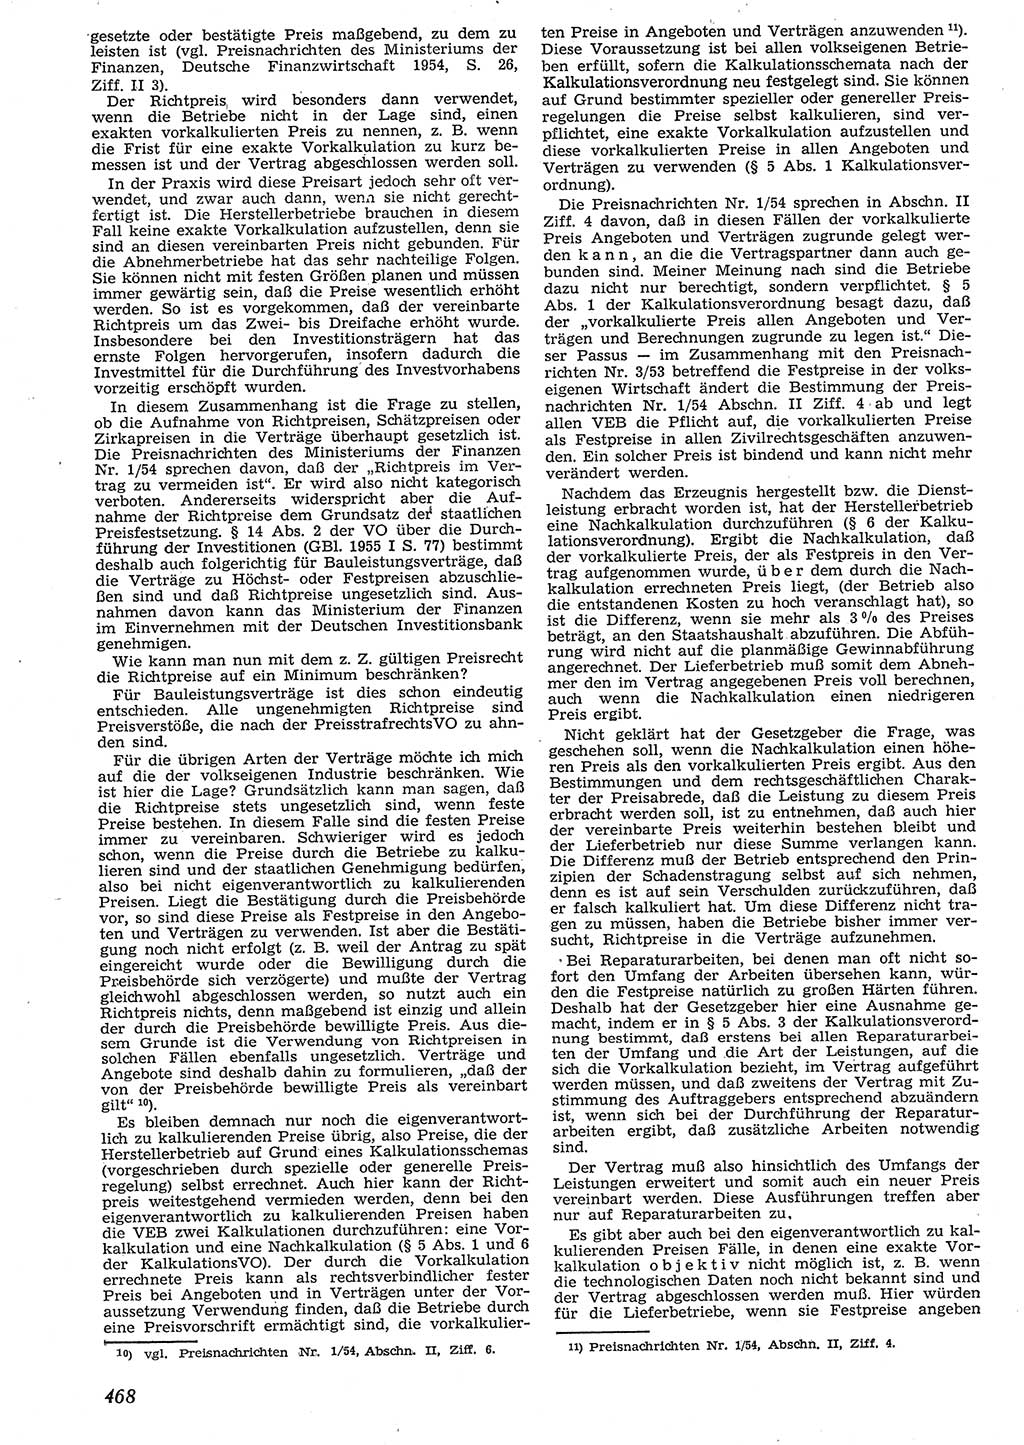 Neue Justiz (NJ), Zeitschrift für Recht und Rechtswissenschaft [Deutsche Demokratische Republik (DDR)], 10. Jahrgang 1956, Seite 468 (NJ DDR 1956, S. 468)